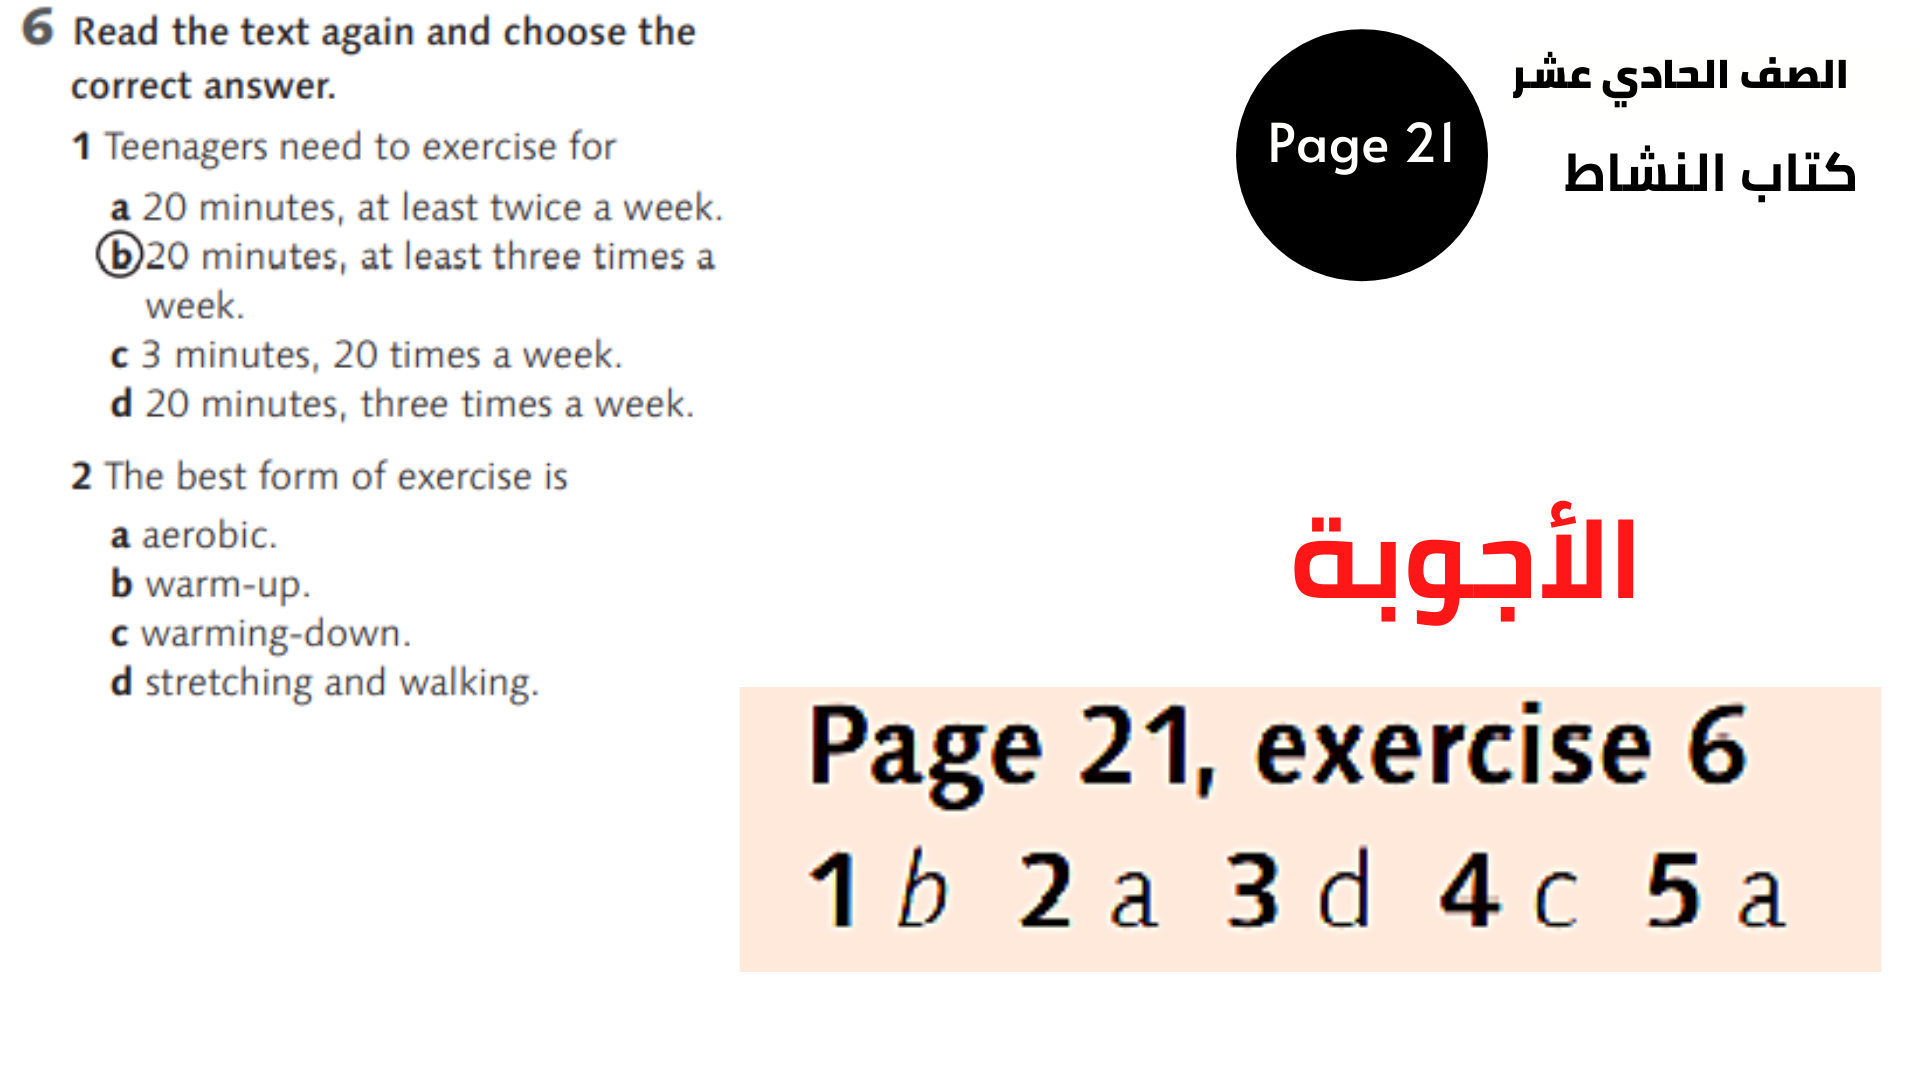 الصفحة 21 ، التمرين 6 الحادي عشر المنهاج الأردني الوحدة الثالثة